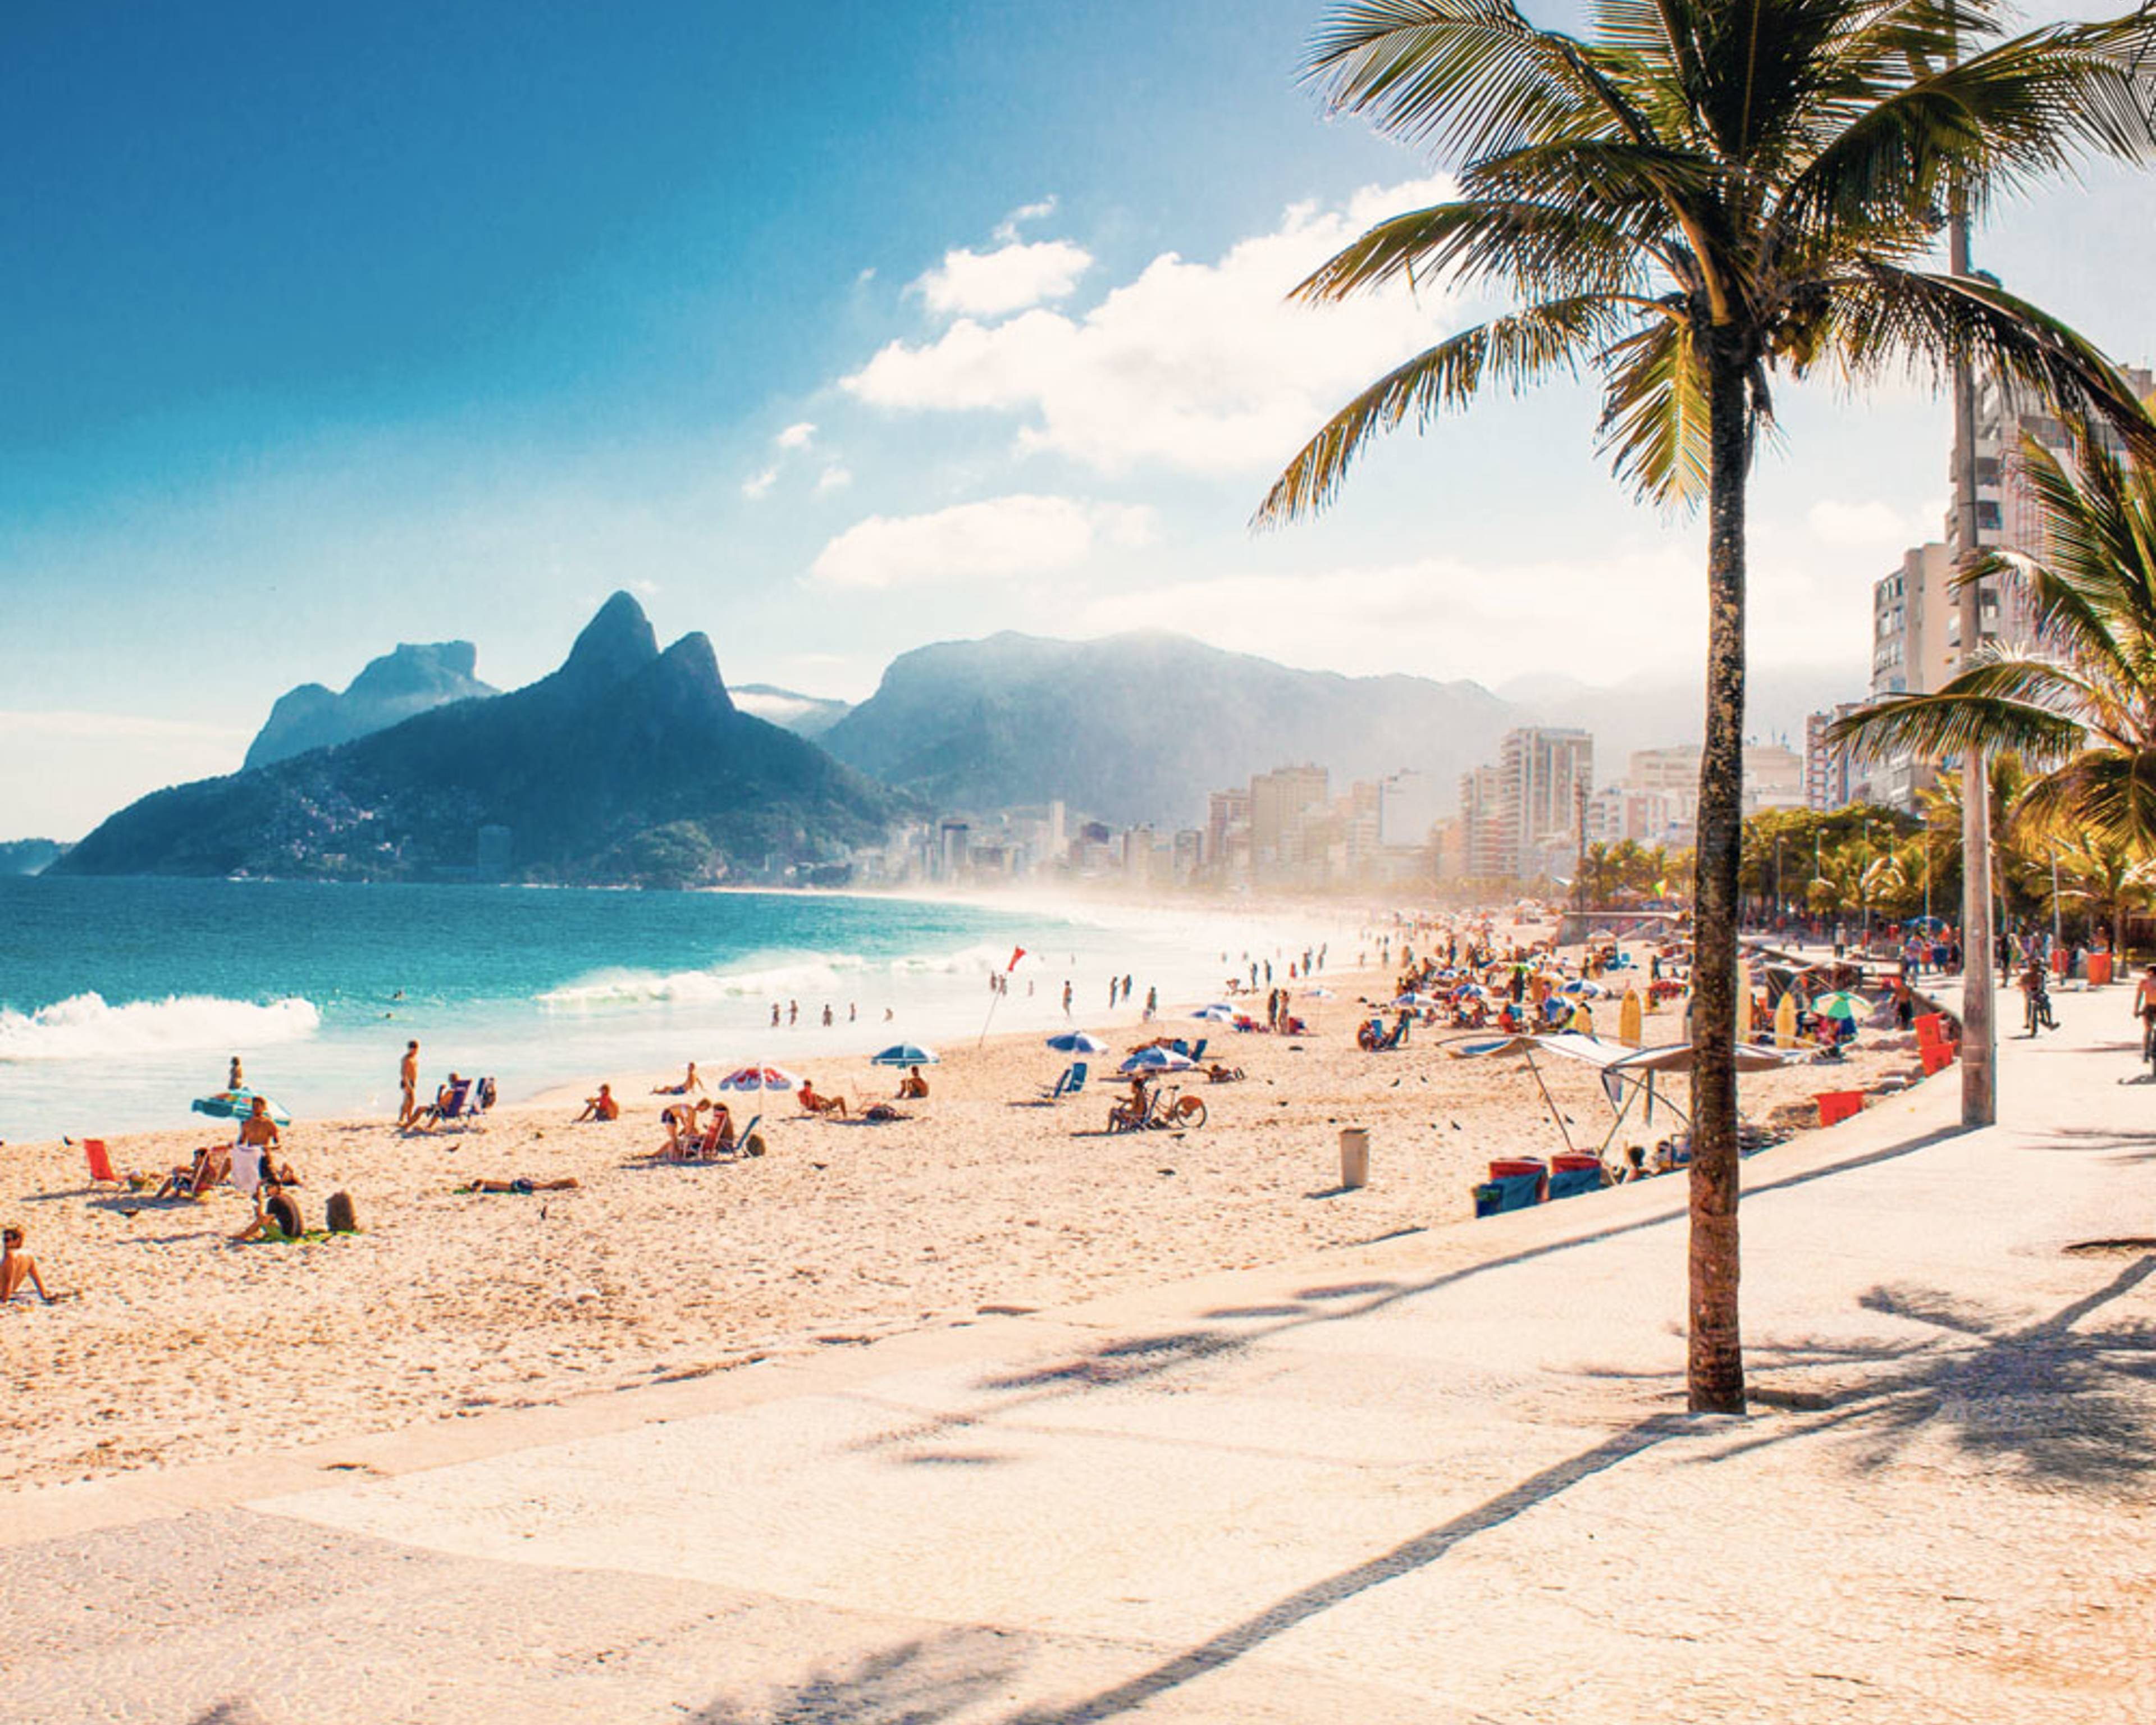 Découvrez les plus belles plages lors de votre voyage au Brésil 100% sur mesure